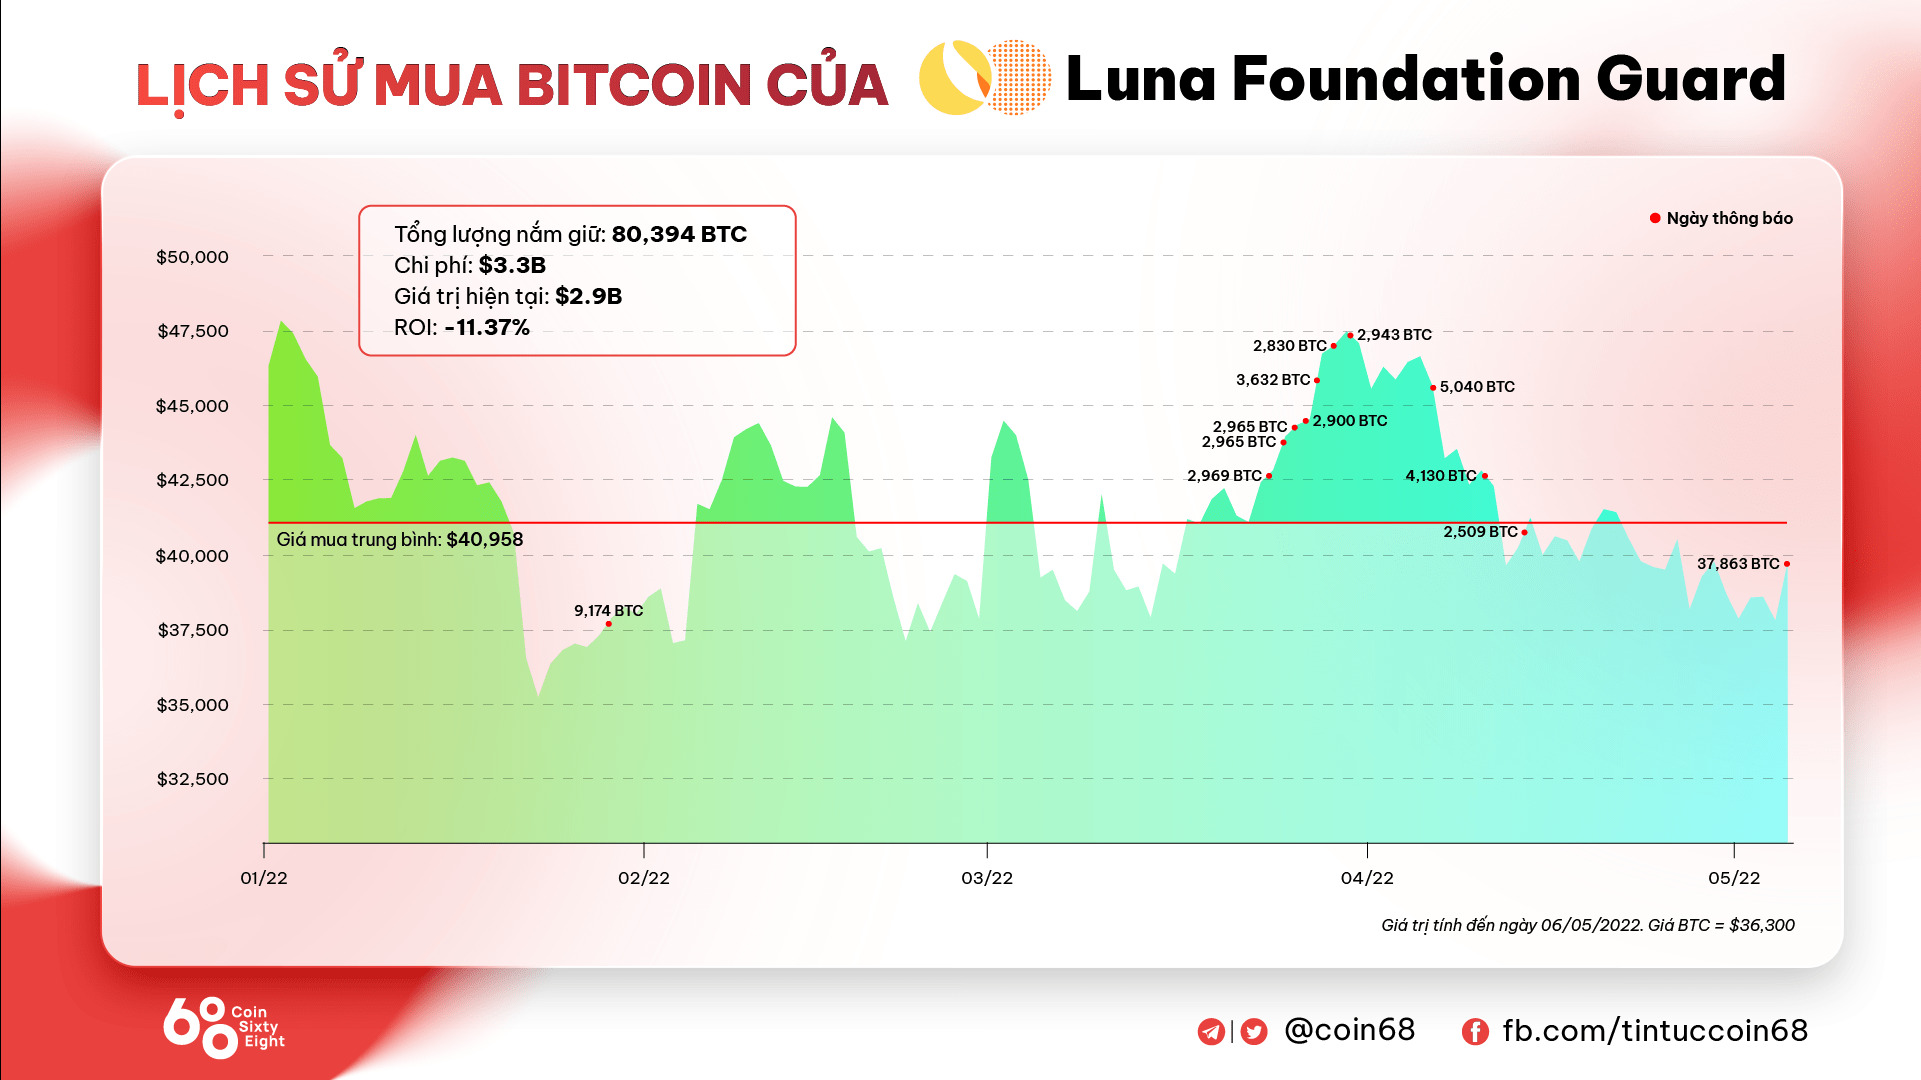 Bitcoin Lại Giảm Luna Bị Dump Và Ust Mất Peg 1 Usd